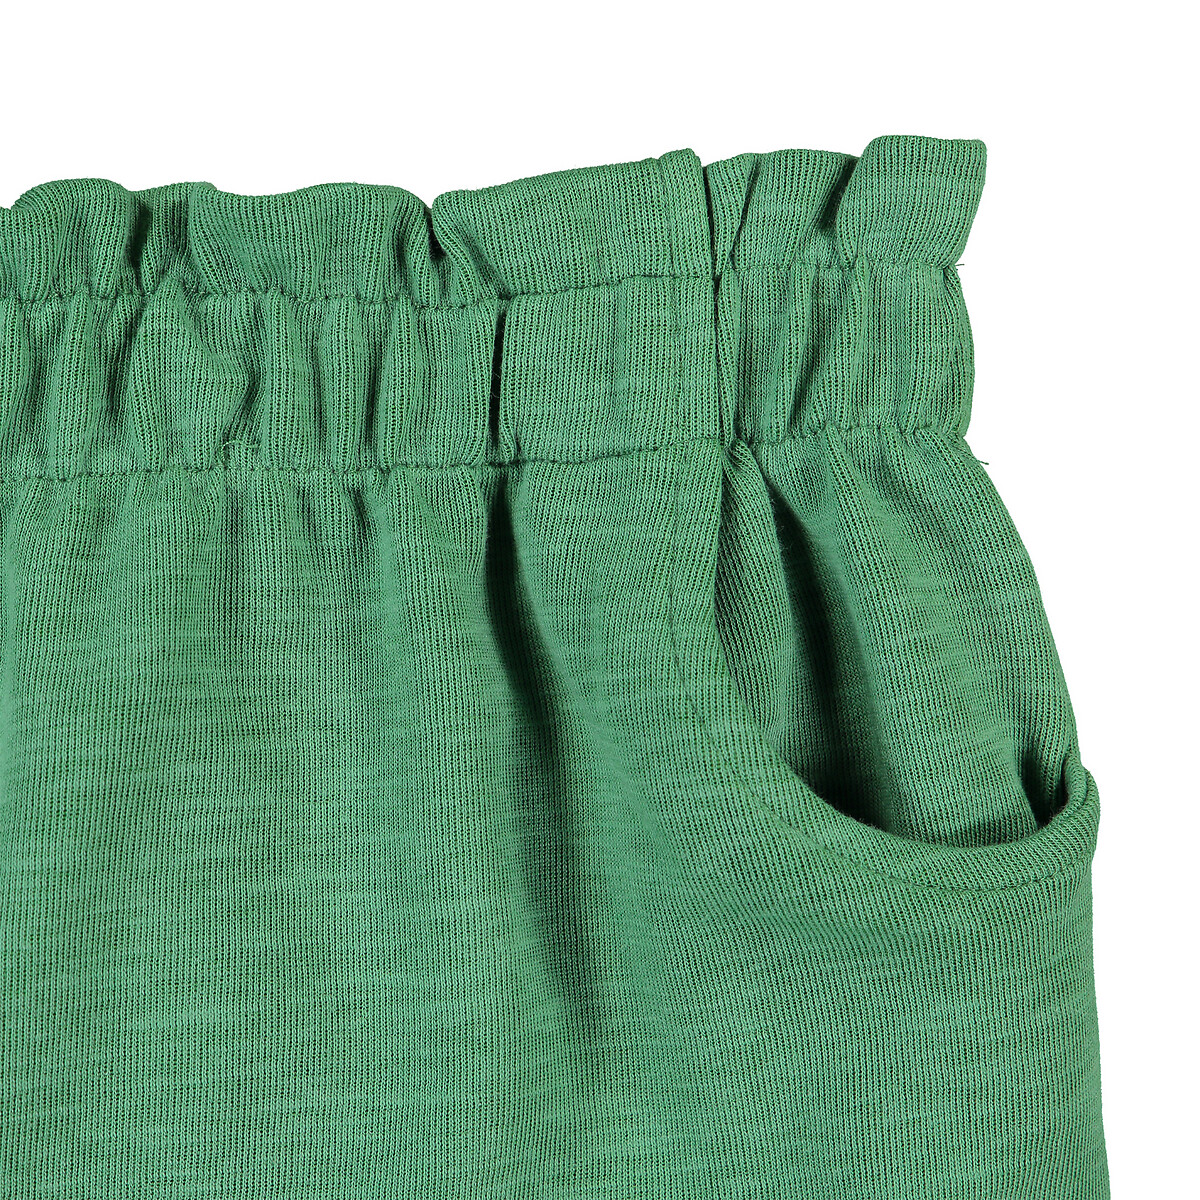 Юбка La Redoute Прямая на эластичном поясе 3-12 лет 4 года - 102 см зеленый, размер 4 года - 102 см - фото 4